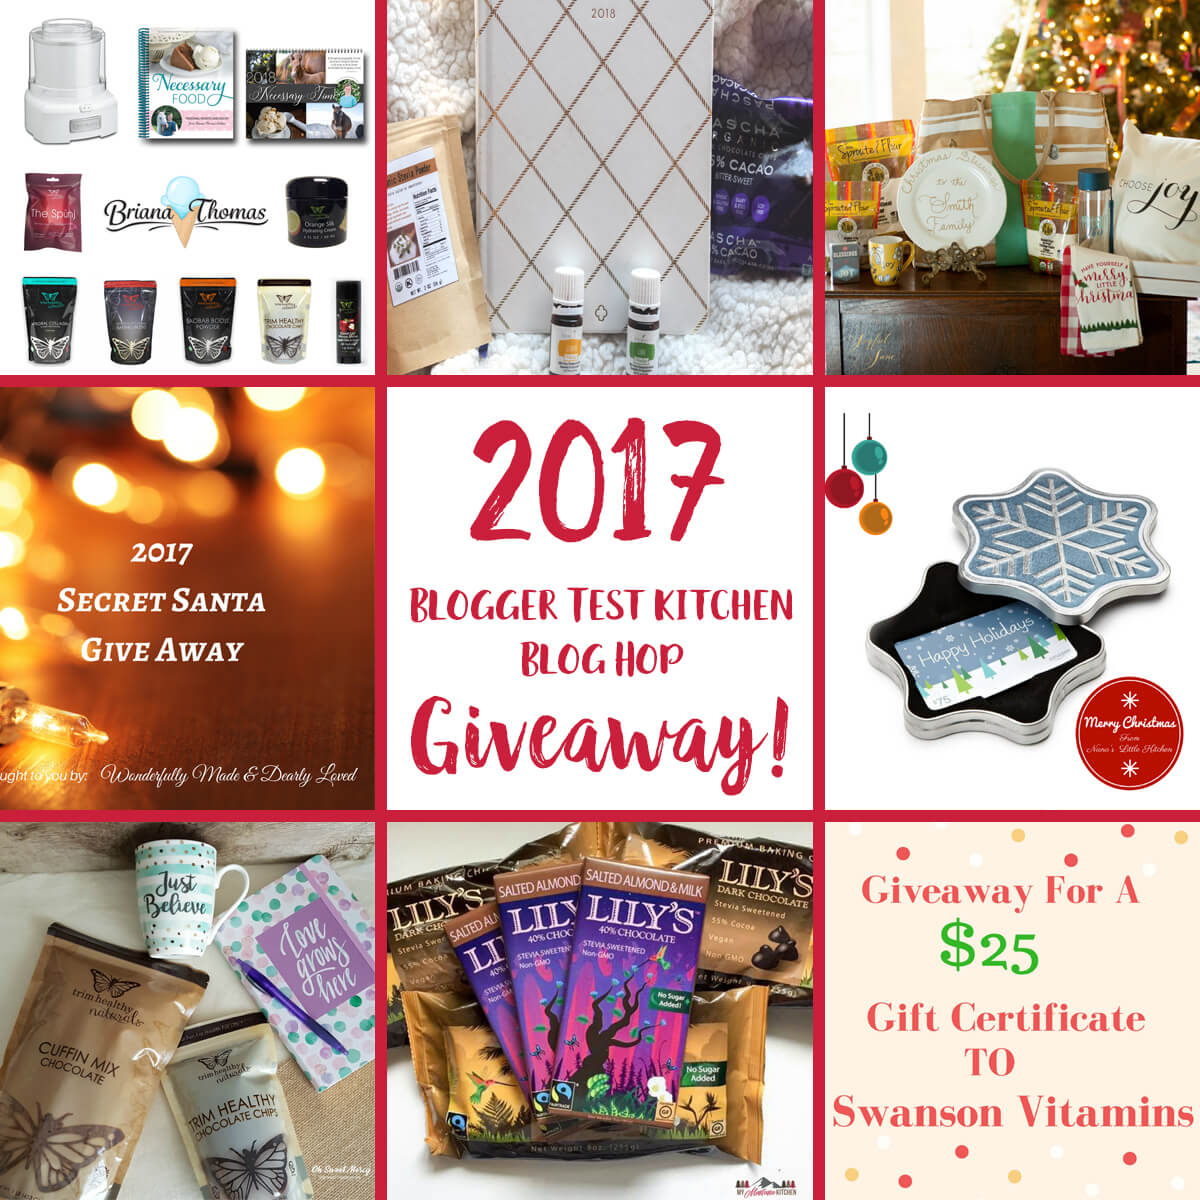 2017 Blogger Test Kitchen Blog Hop Giveaway